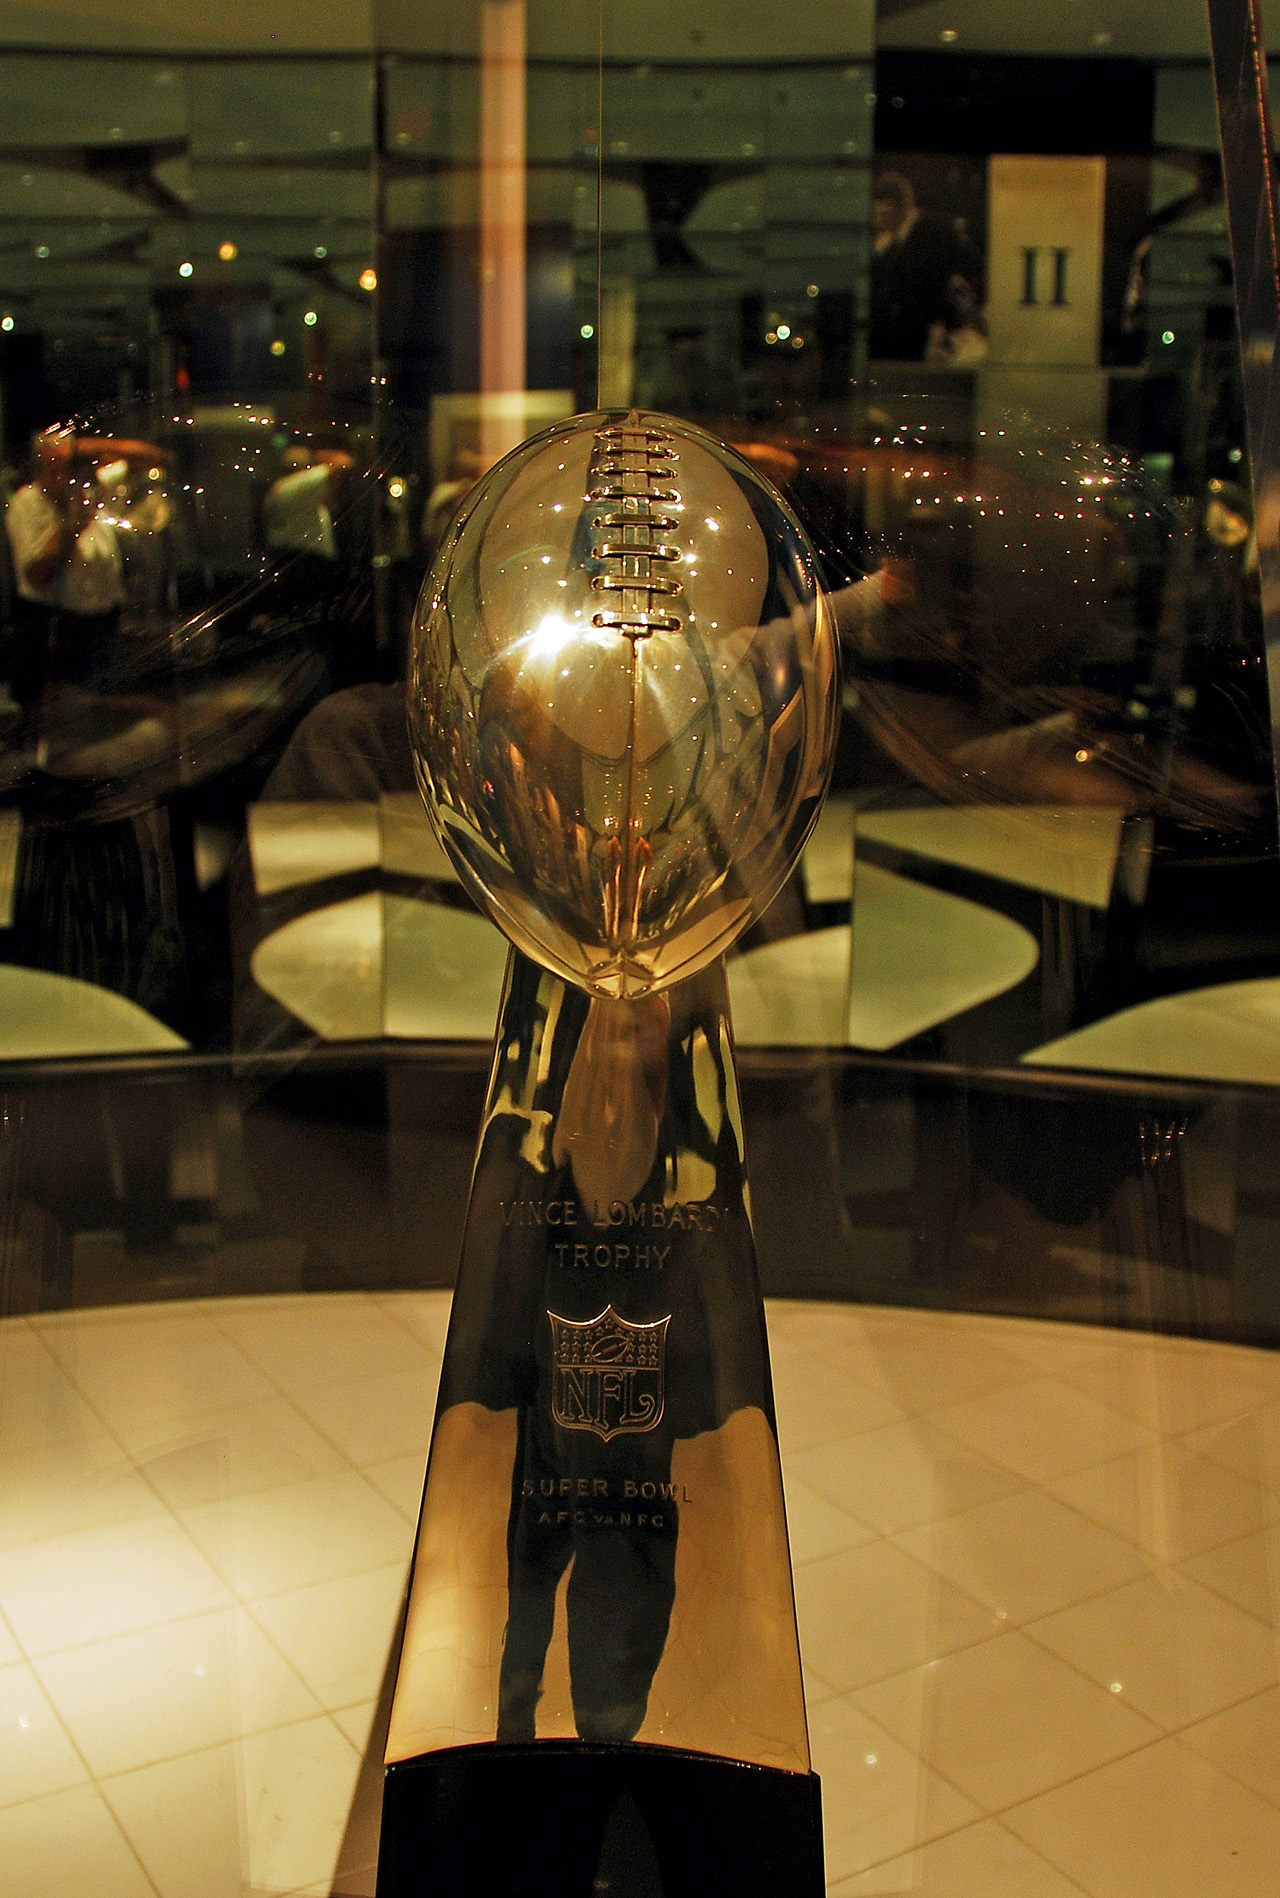 2012-04-23, 028, Superbowl Trophy